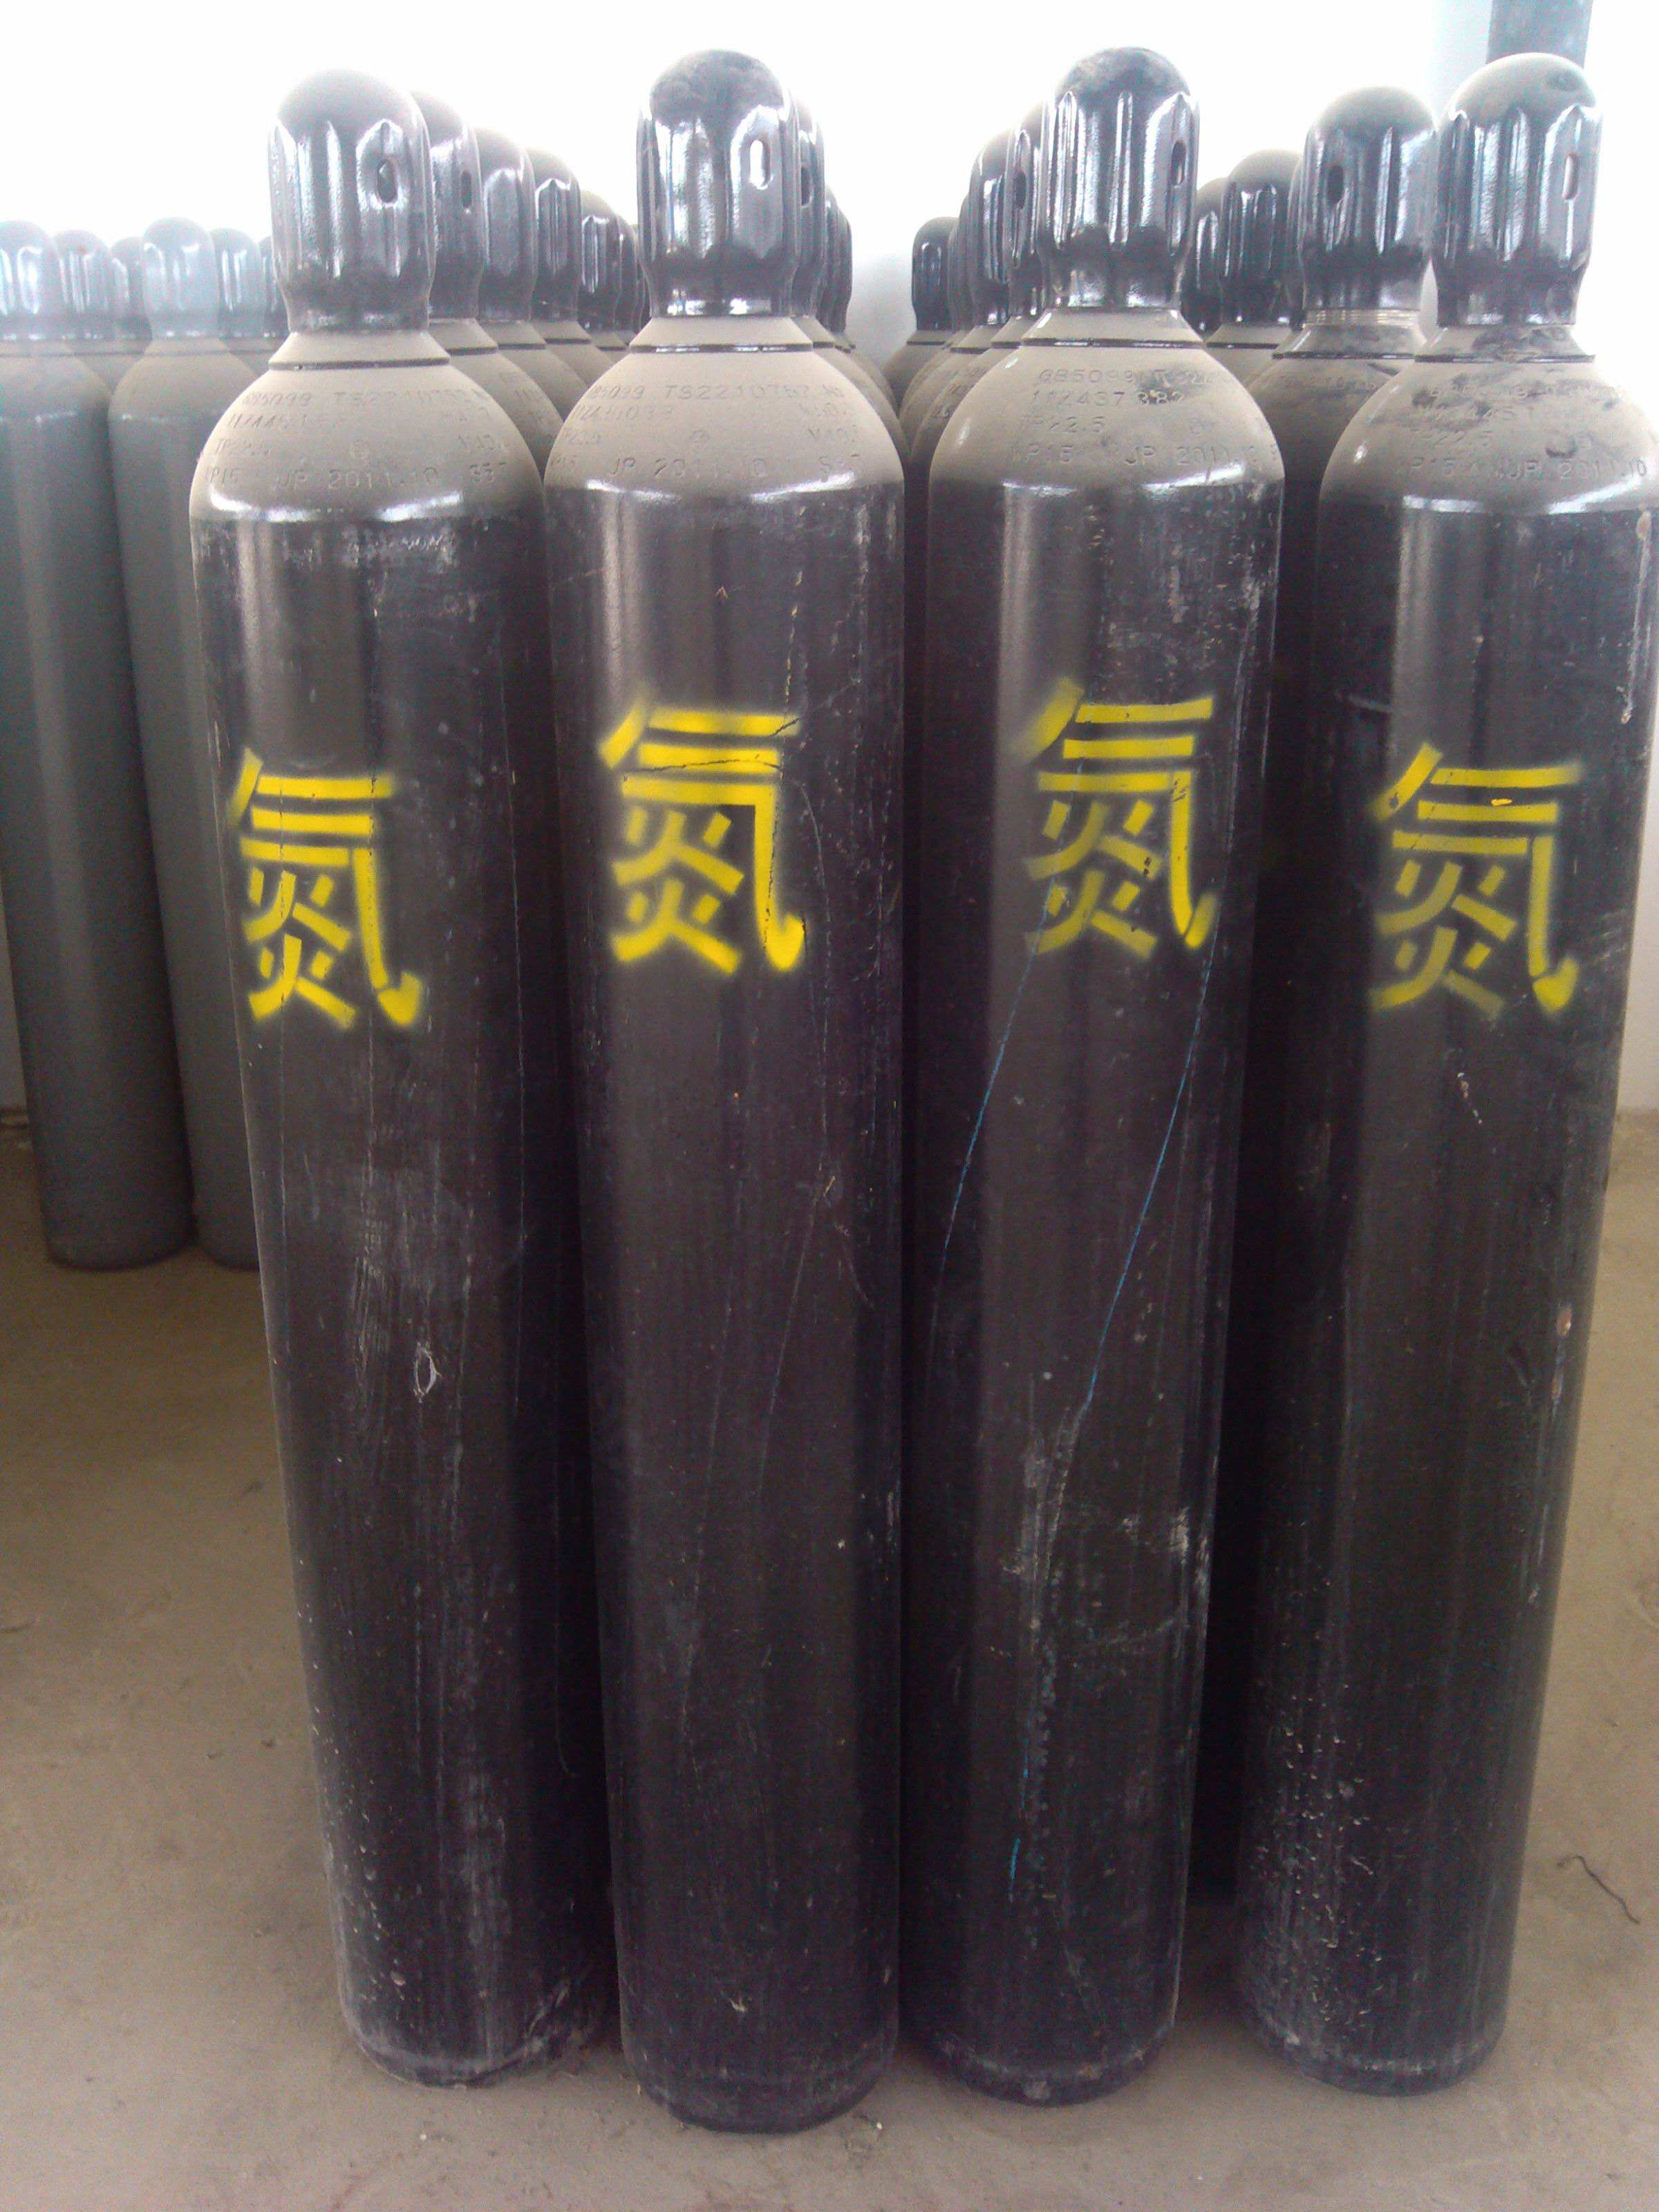 天津红桥区送氮气配送 气体配送公司 全市直送 利信工业气体